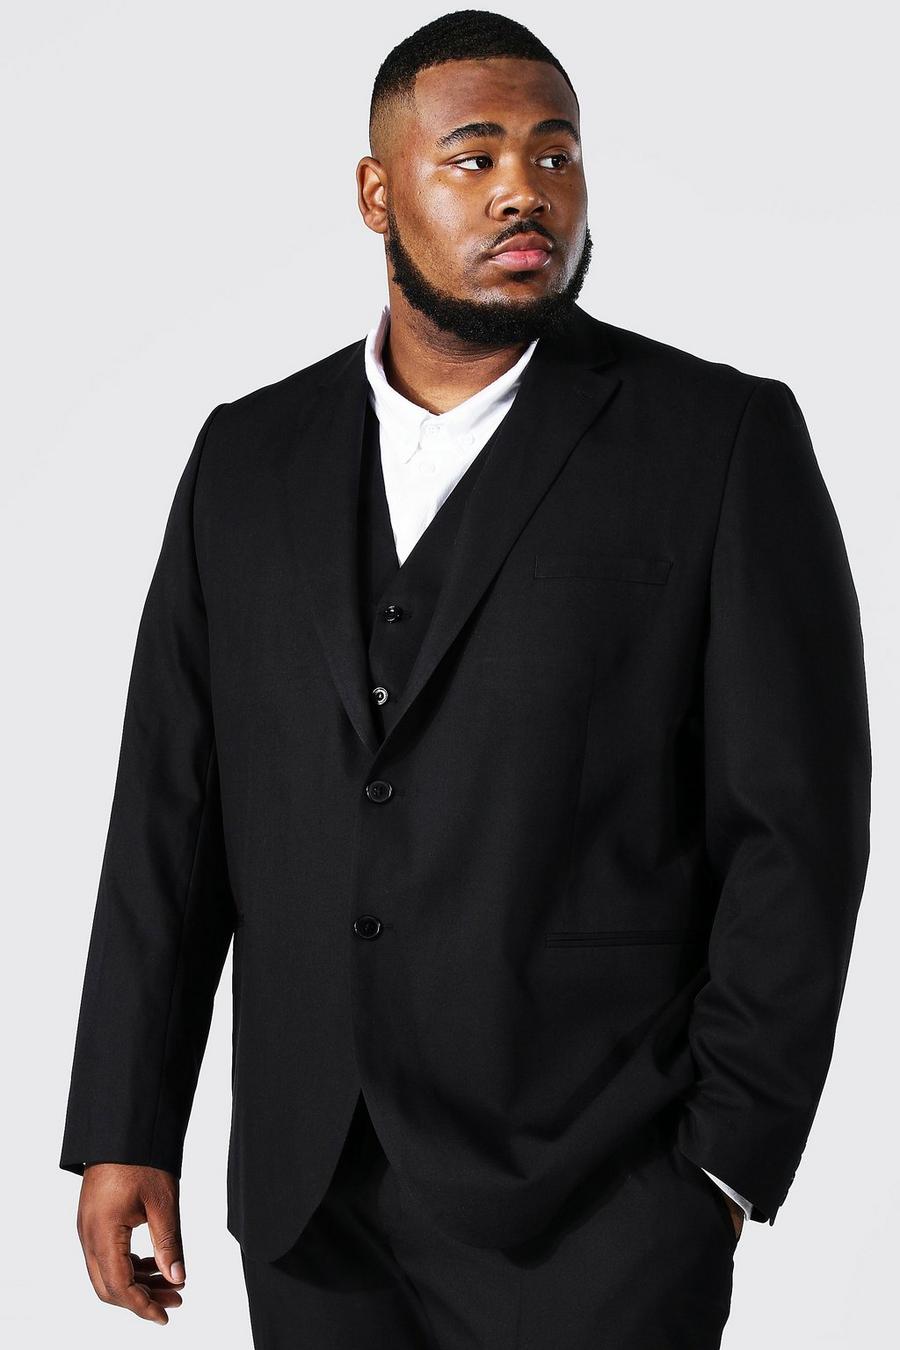 שחור negro ז'קט חליפה בגזרה צרה עם רכיסה בודדת, למידות גדולות